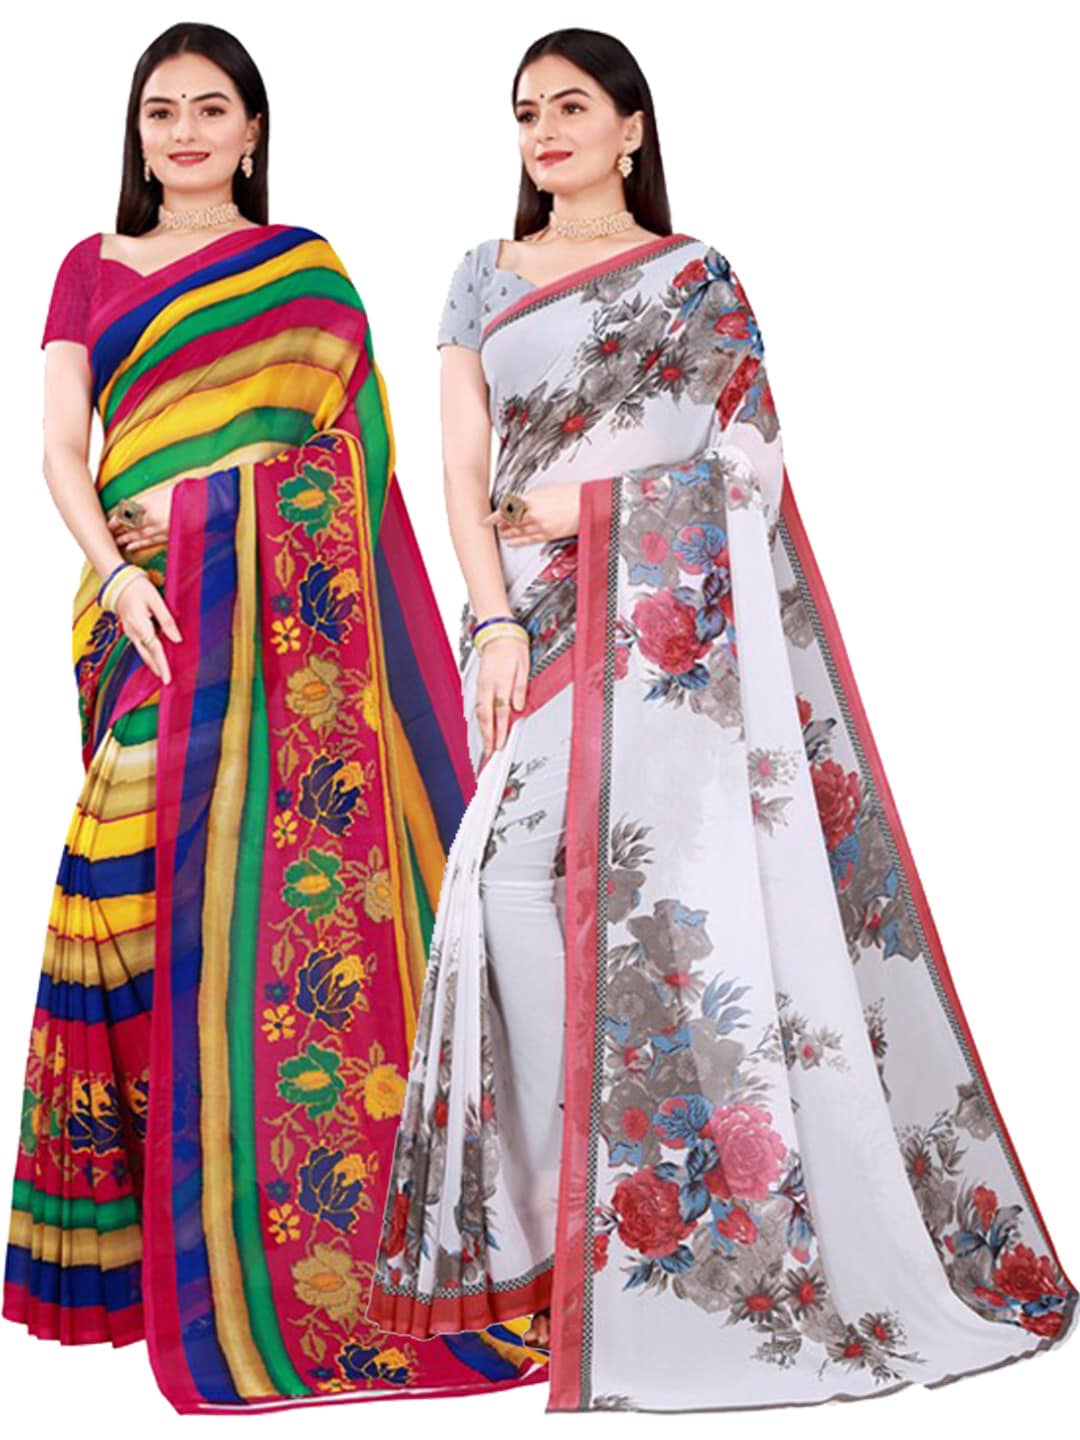 Amazon Sarees: Buy 1 Get 1 Free: Women's Sarees priced ₹100 - ₹500